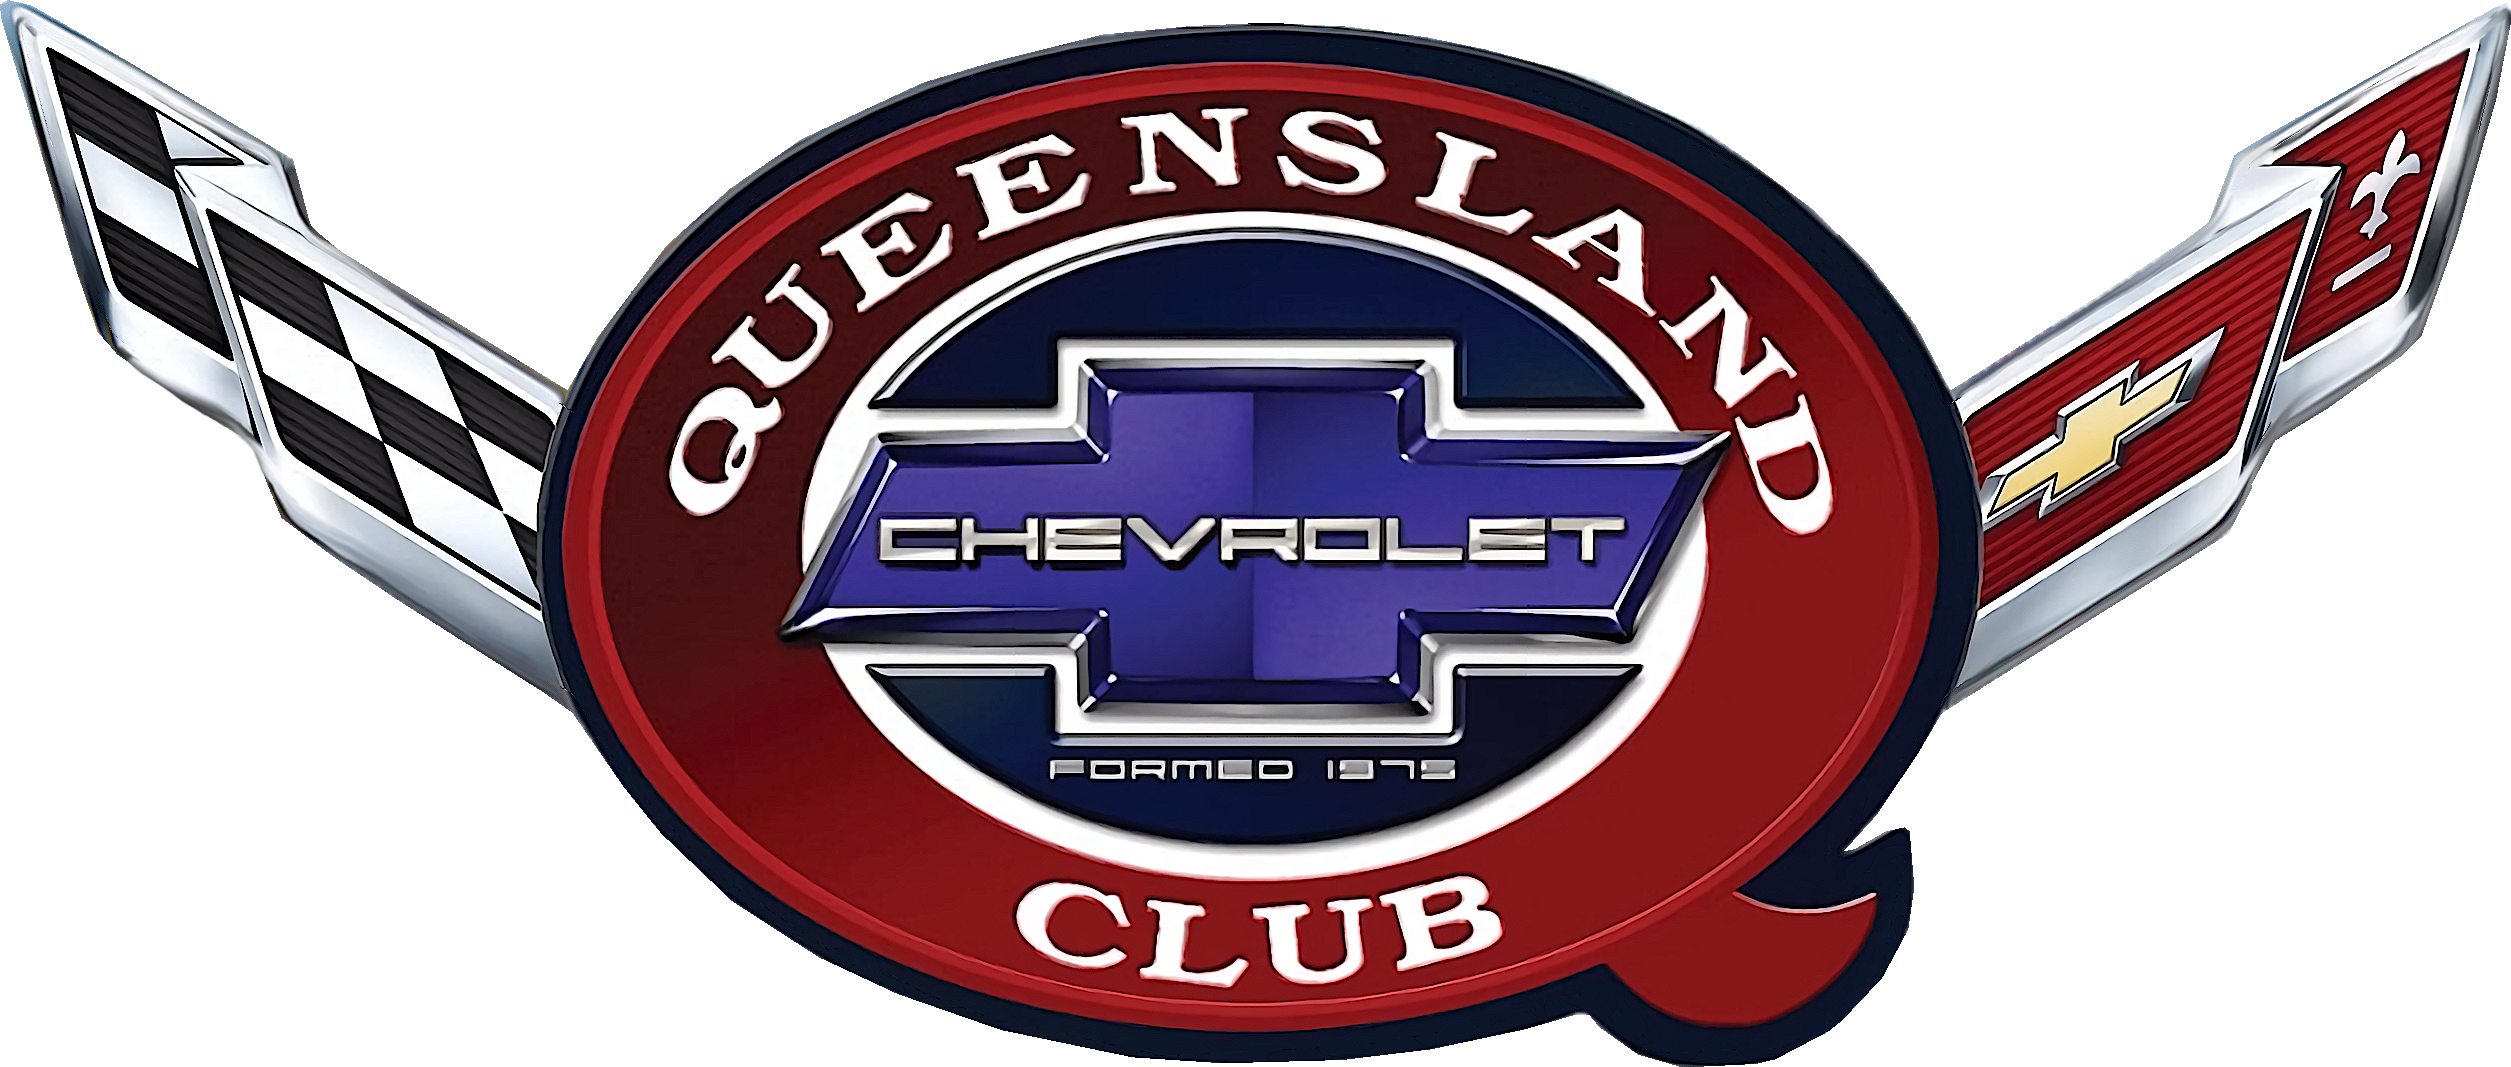 Qld Chevrolet Car Club 